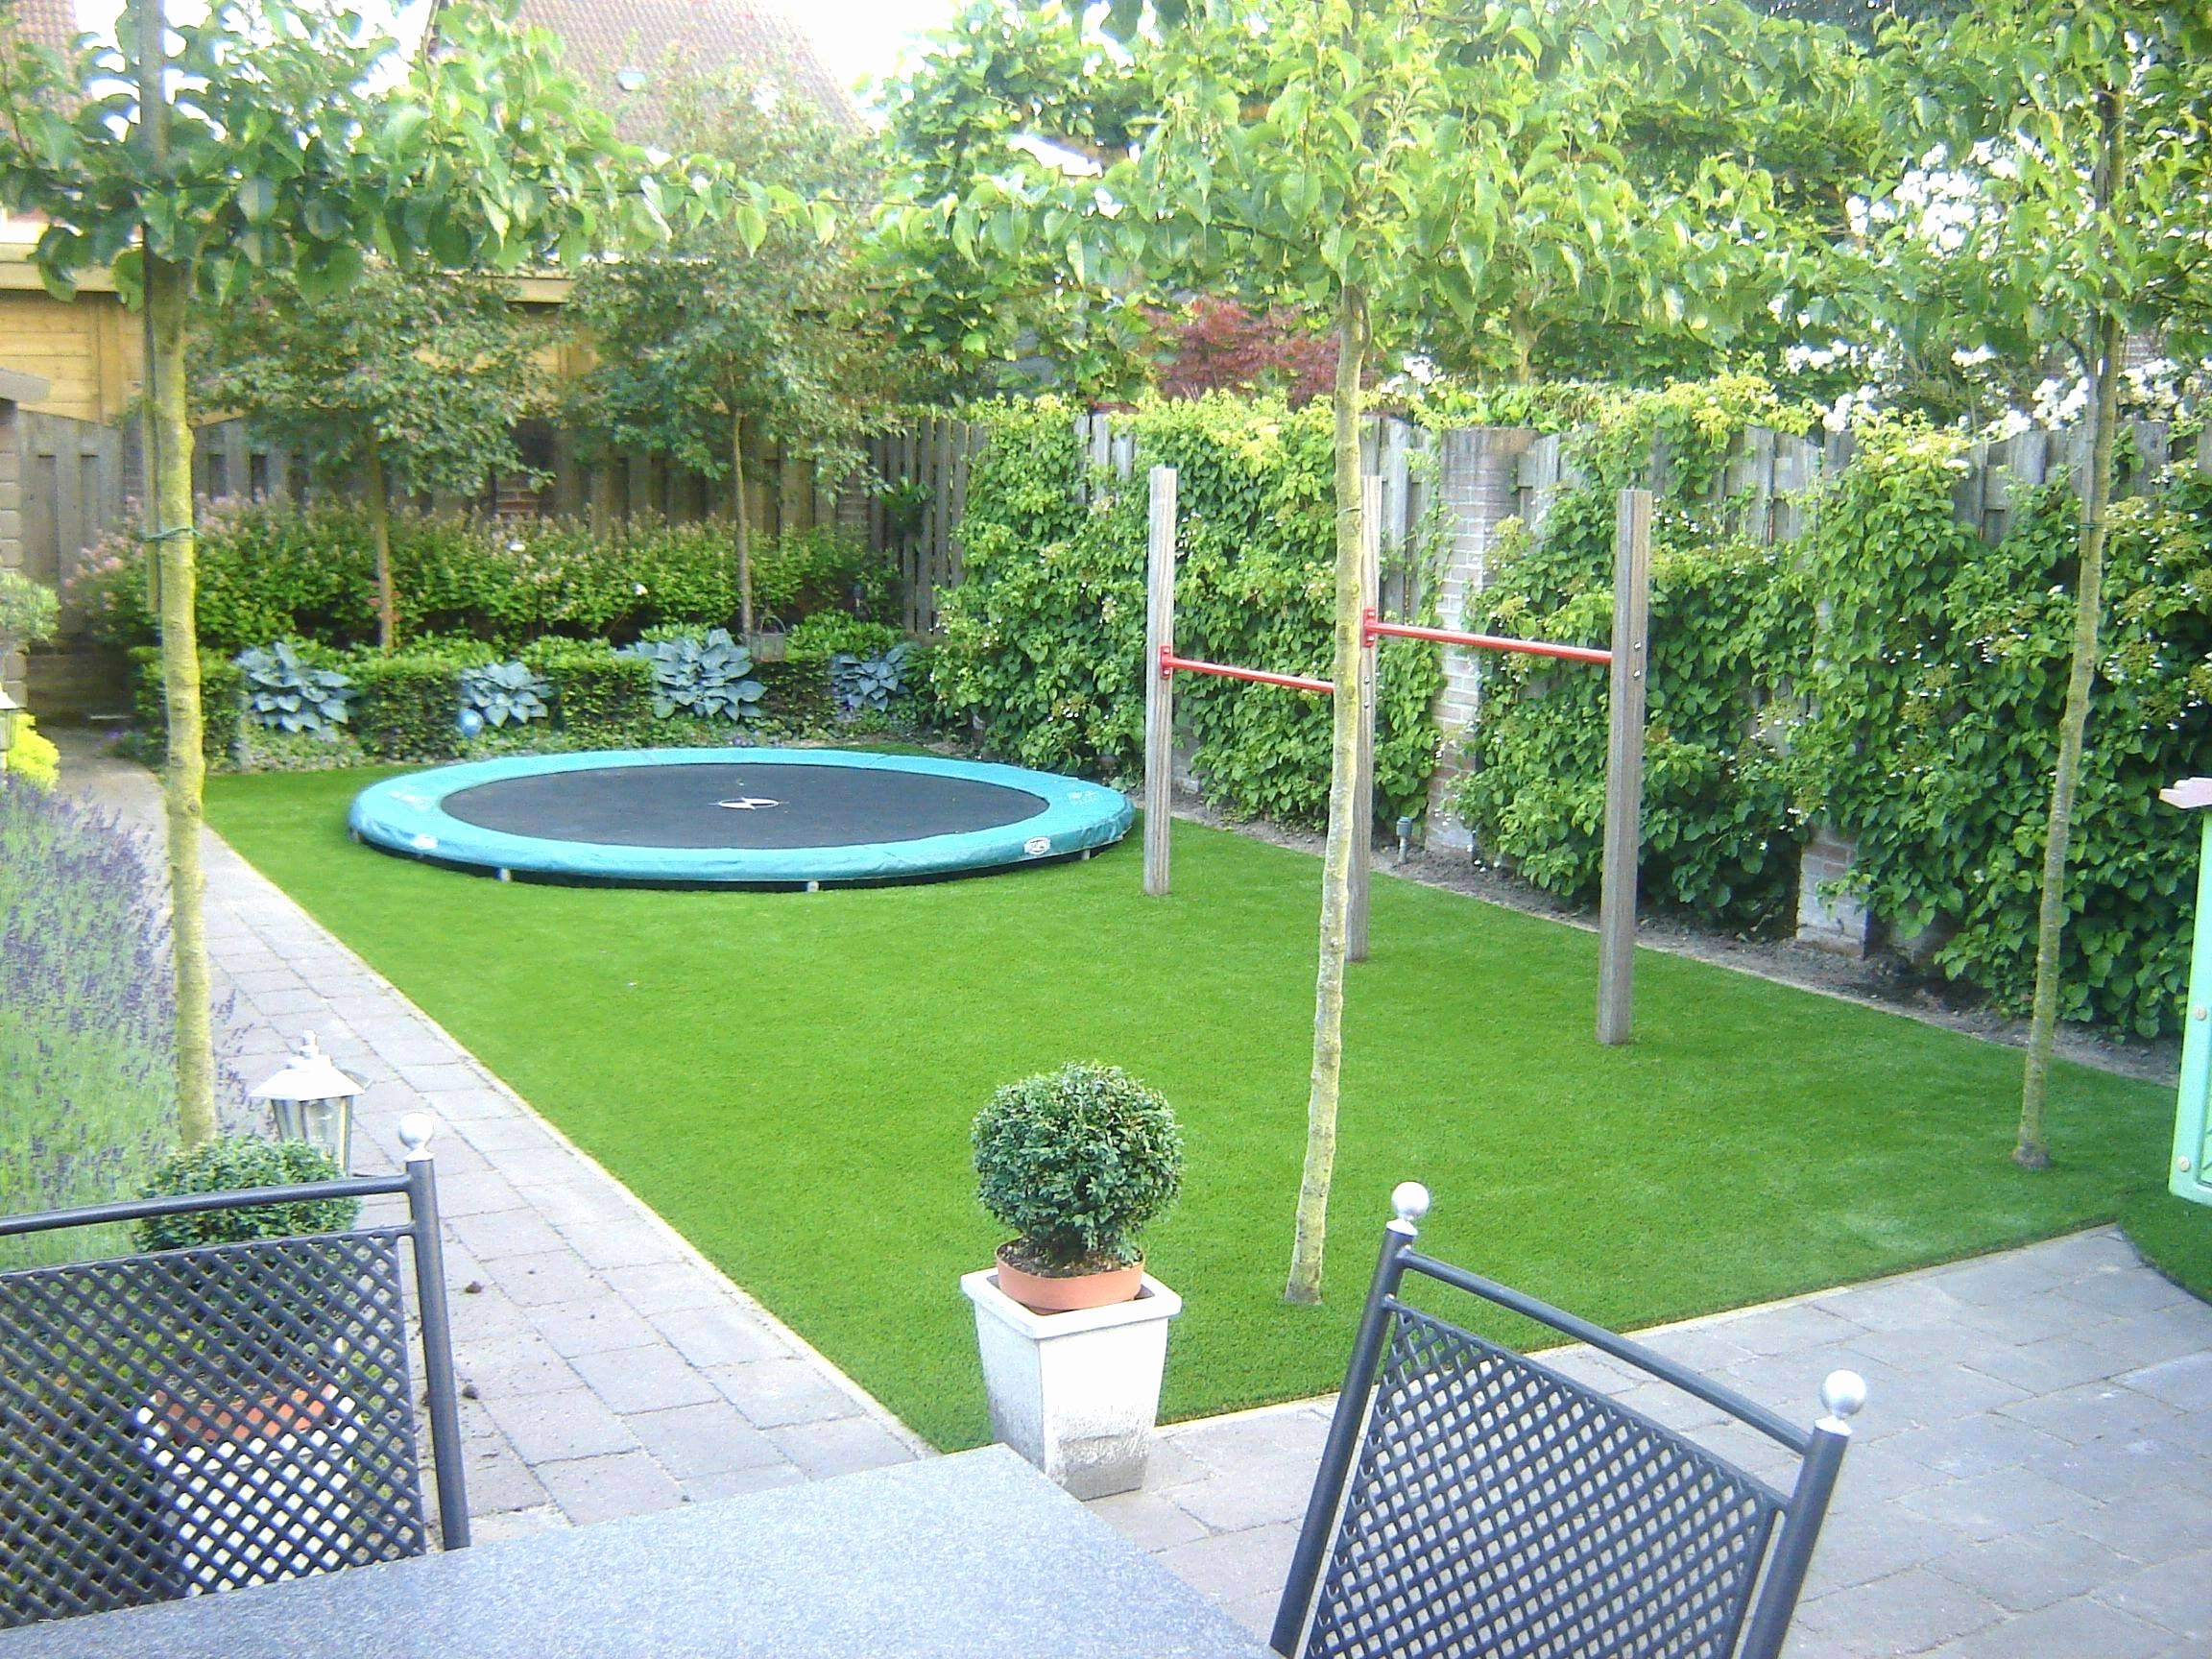 Kleiner Garten Ohne Rasen Best Of 34 Elegant Sichtschutz Kleiner Garten Inspirierend